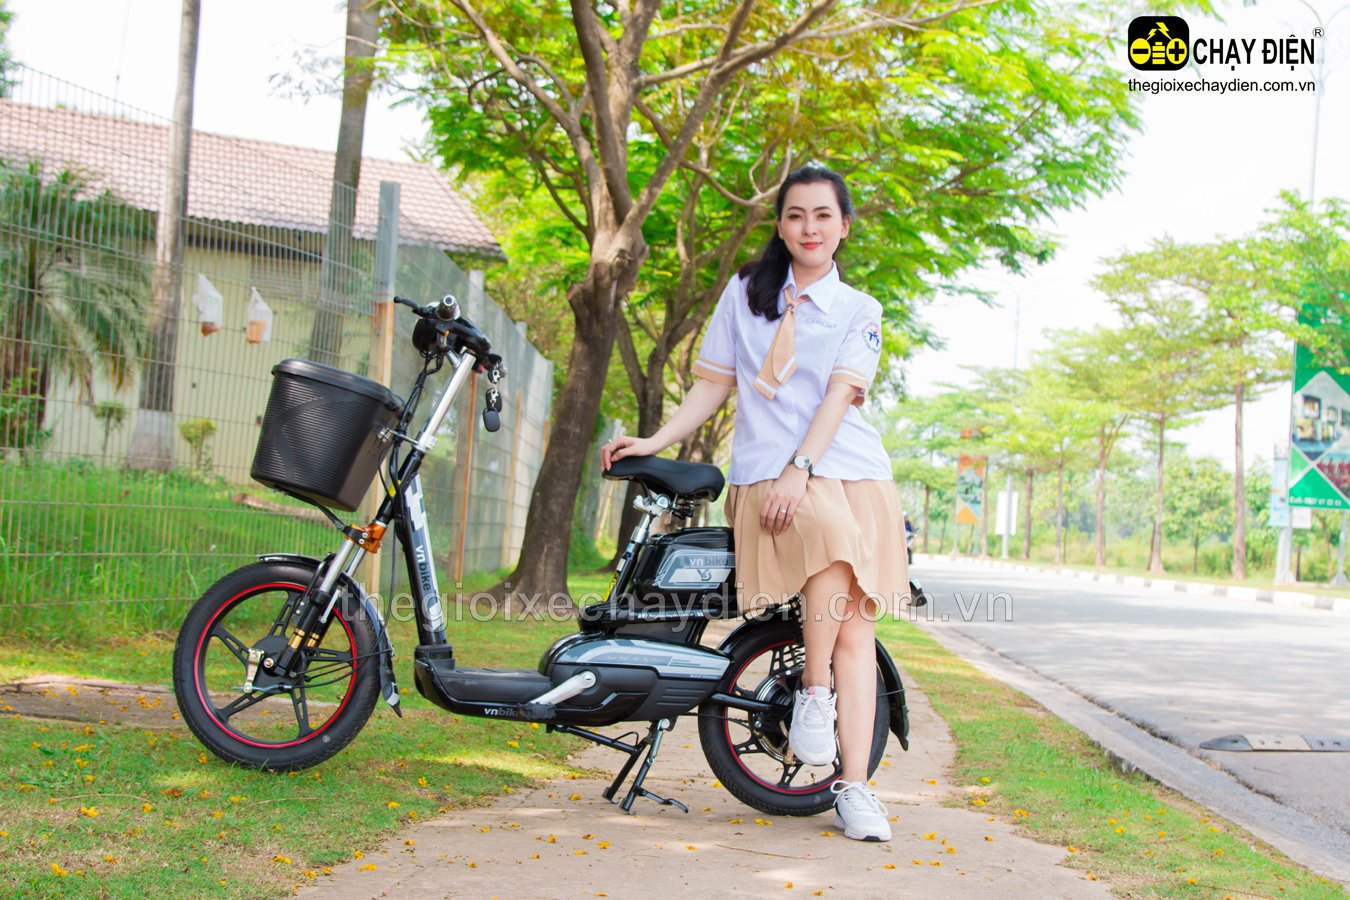 Xe đạp điện Vnbike V3 sở hữu thiết kế nhỏ gọn, hài hoà